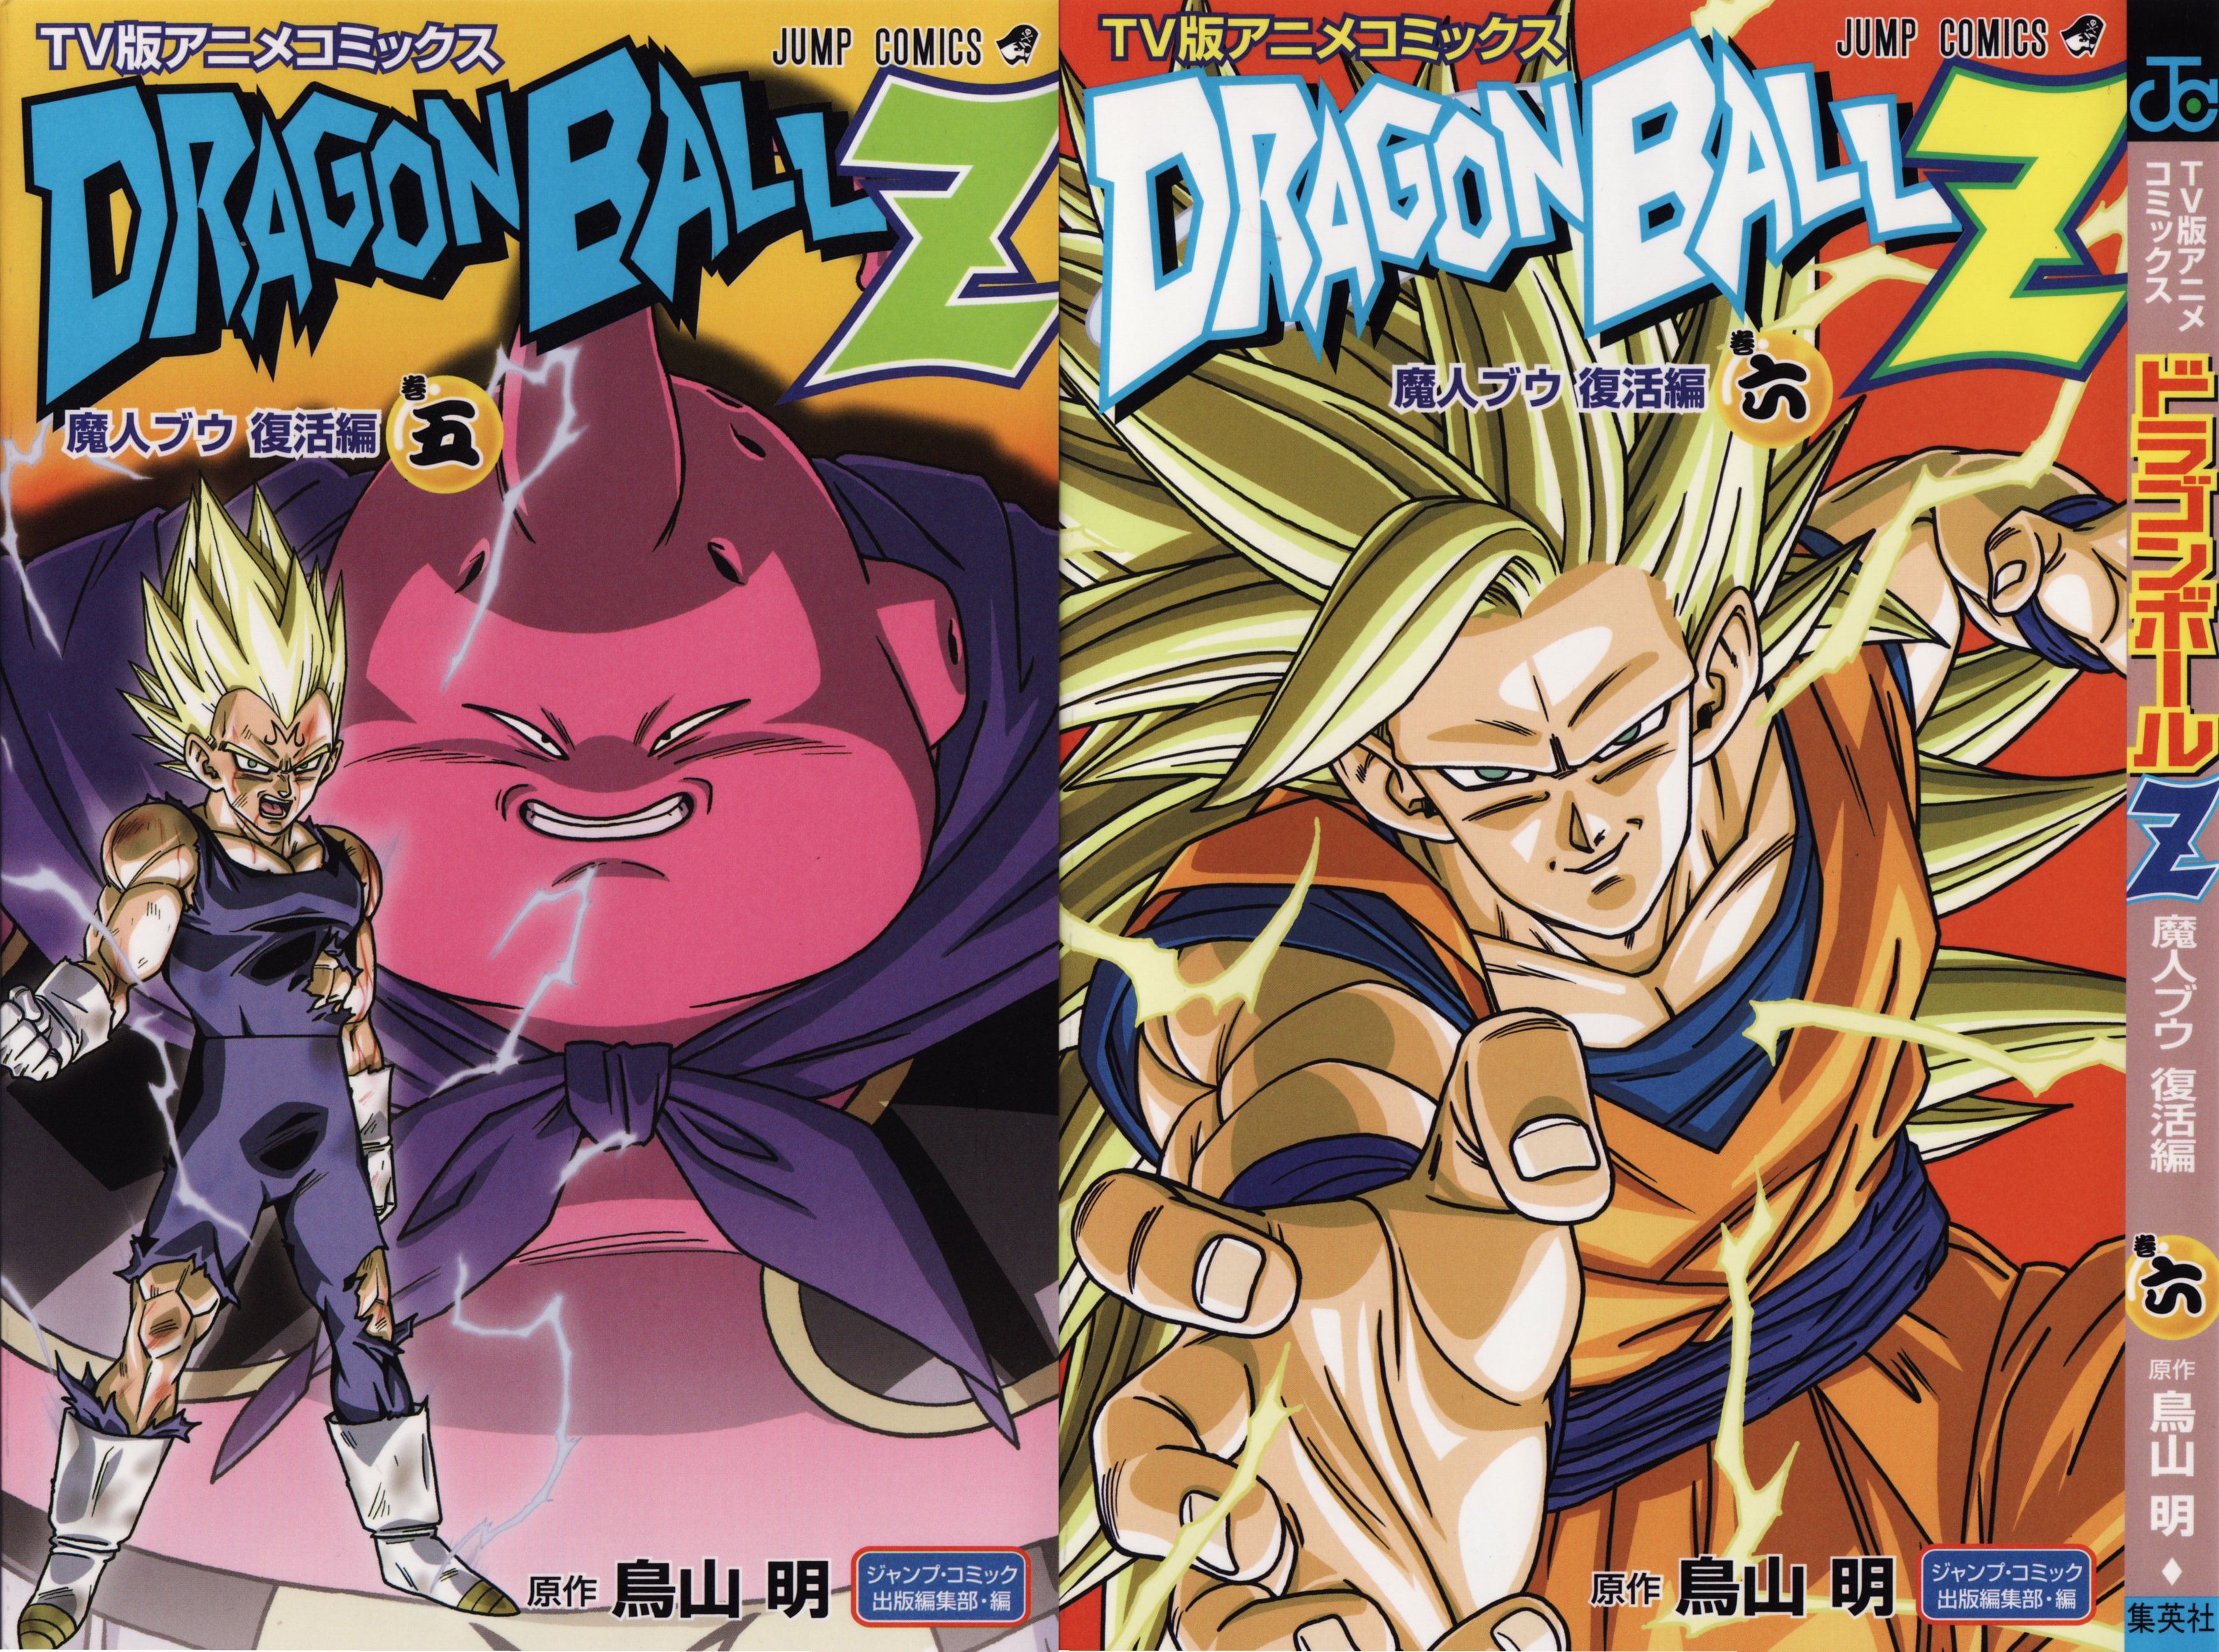 Dragon Ball TV Ban Anime Comics Majin Buu Saga